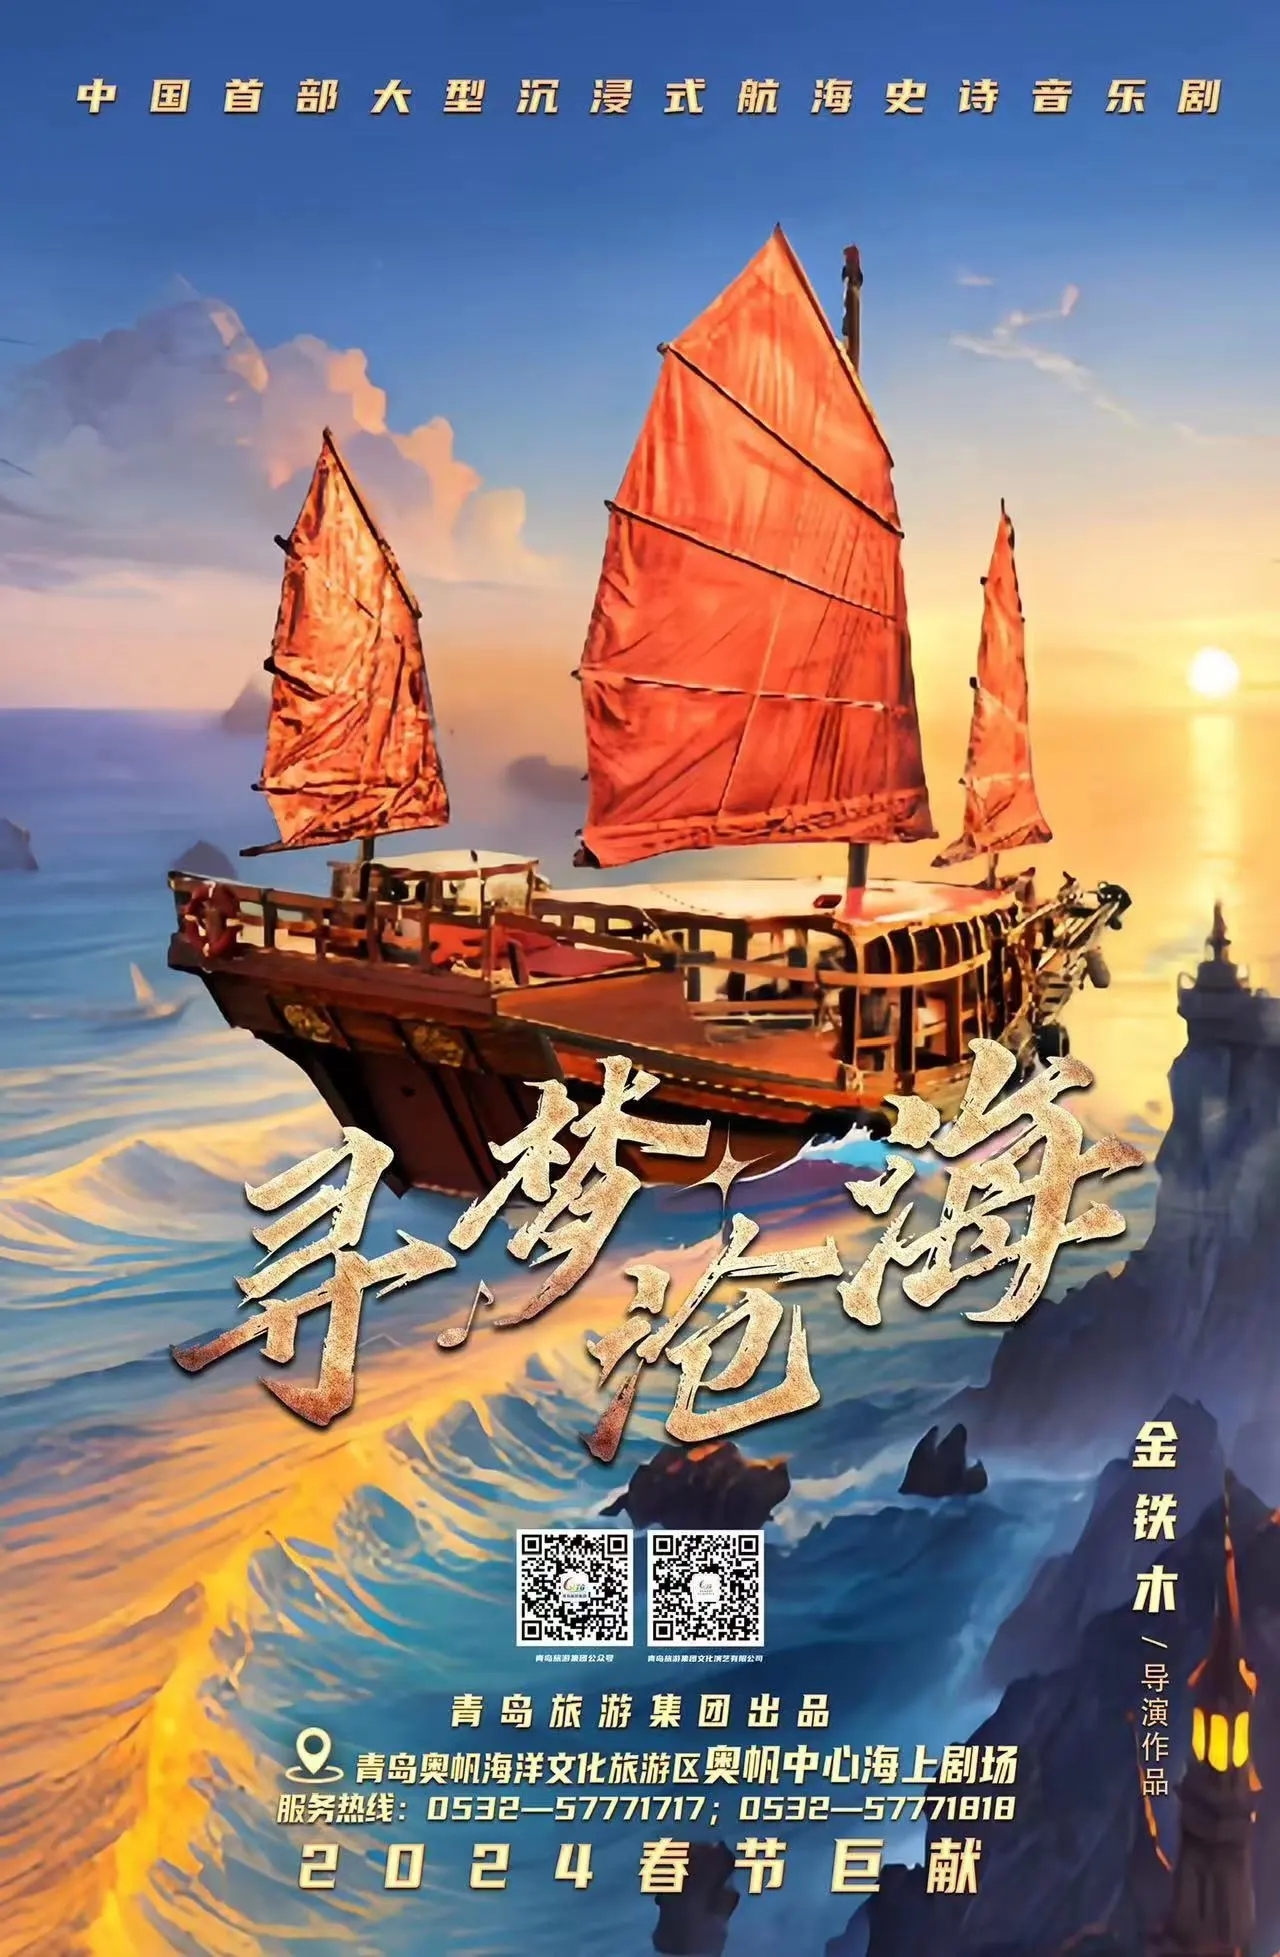 中国首部大型沉浸式航海史诗音乐剧 《寻梦沧海》 定档正月十五青岛首演